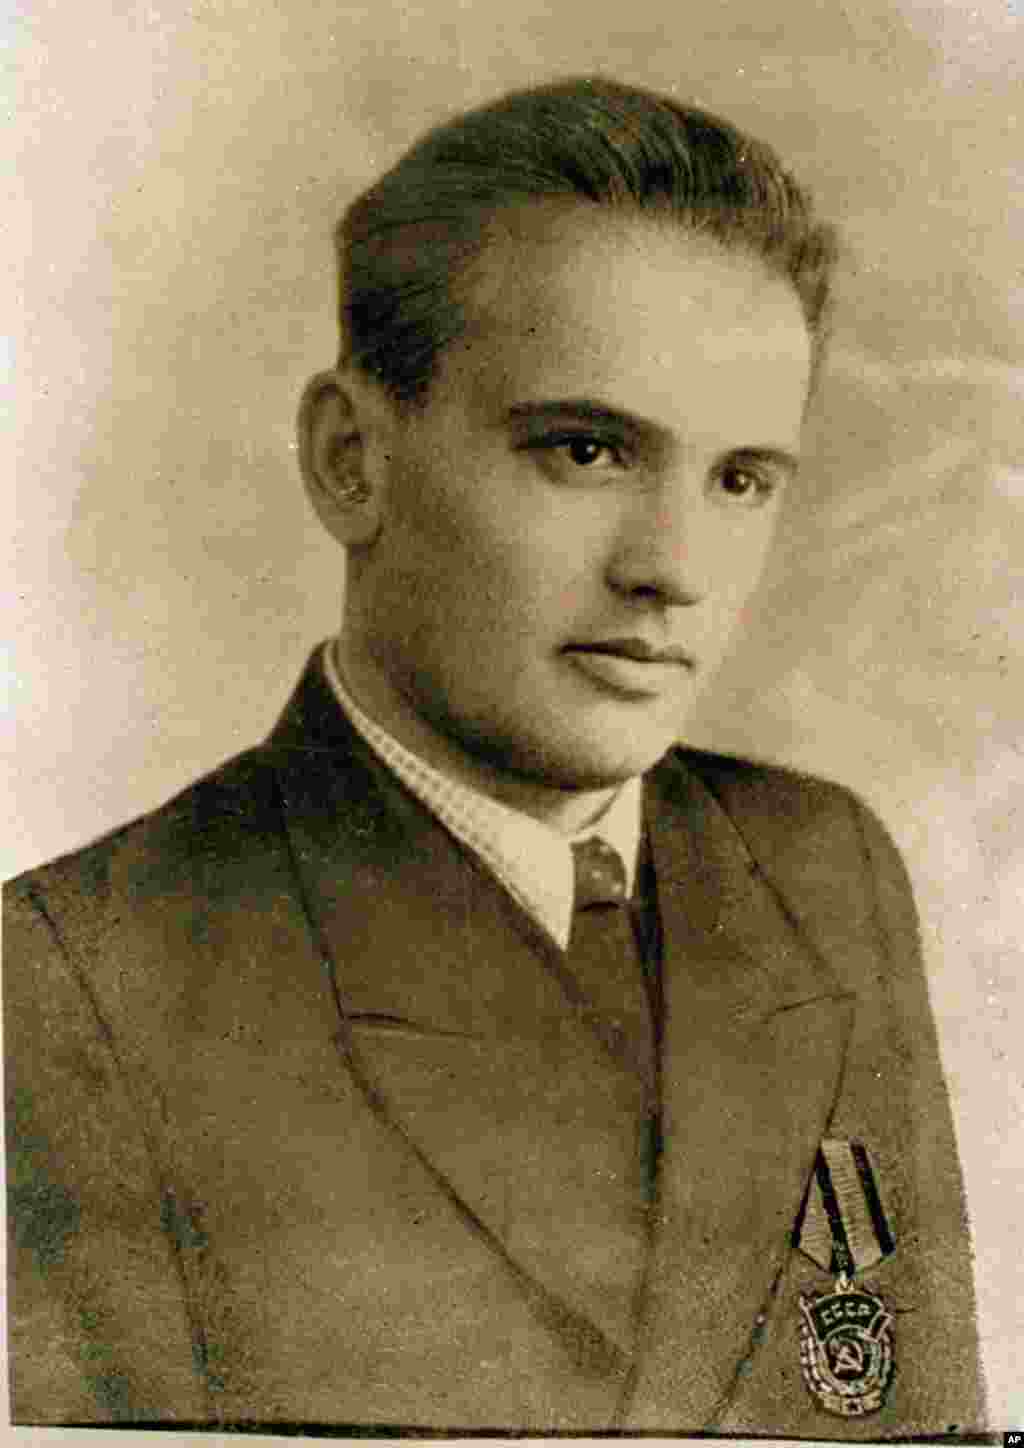 Молодий Горбачов у віці 19 років. На лацкані піджака у нього орден Трудового Червоного Прапора, який Горбачов отримав за керування комбайном на рівнинах півдня Росії